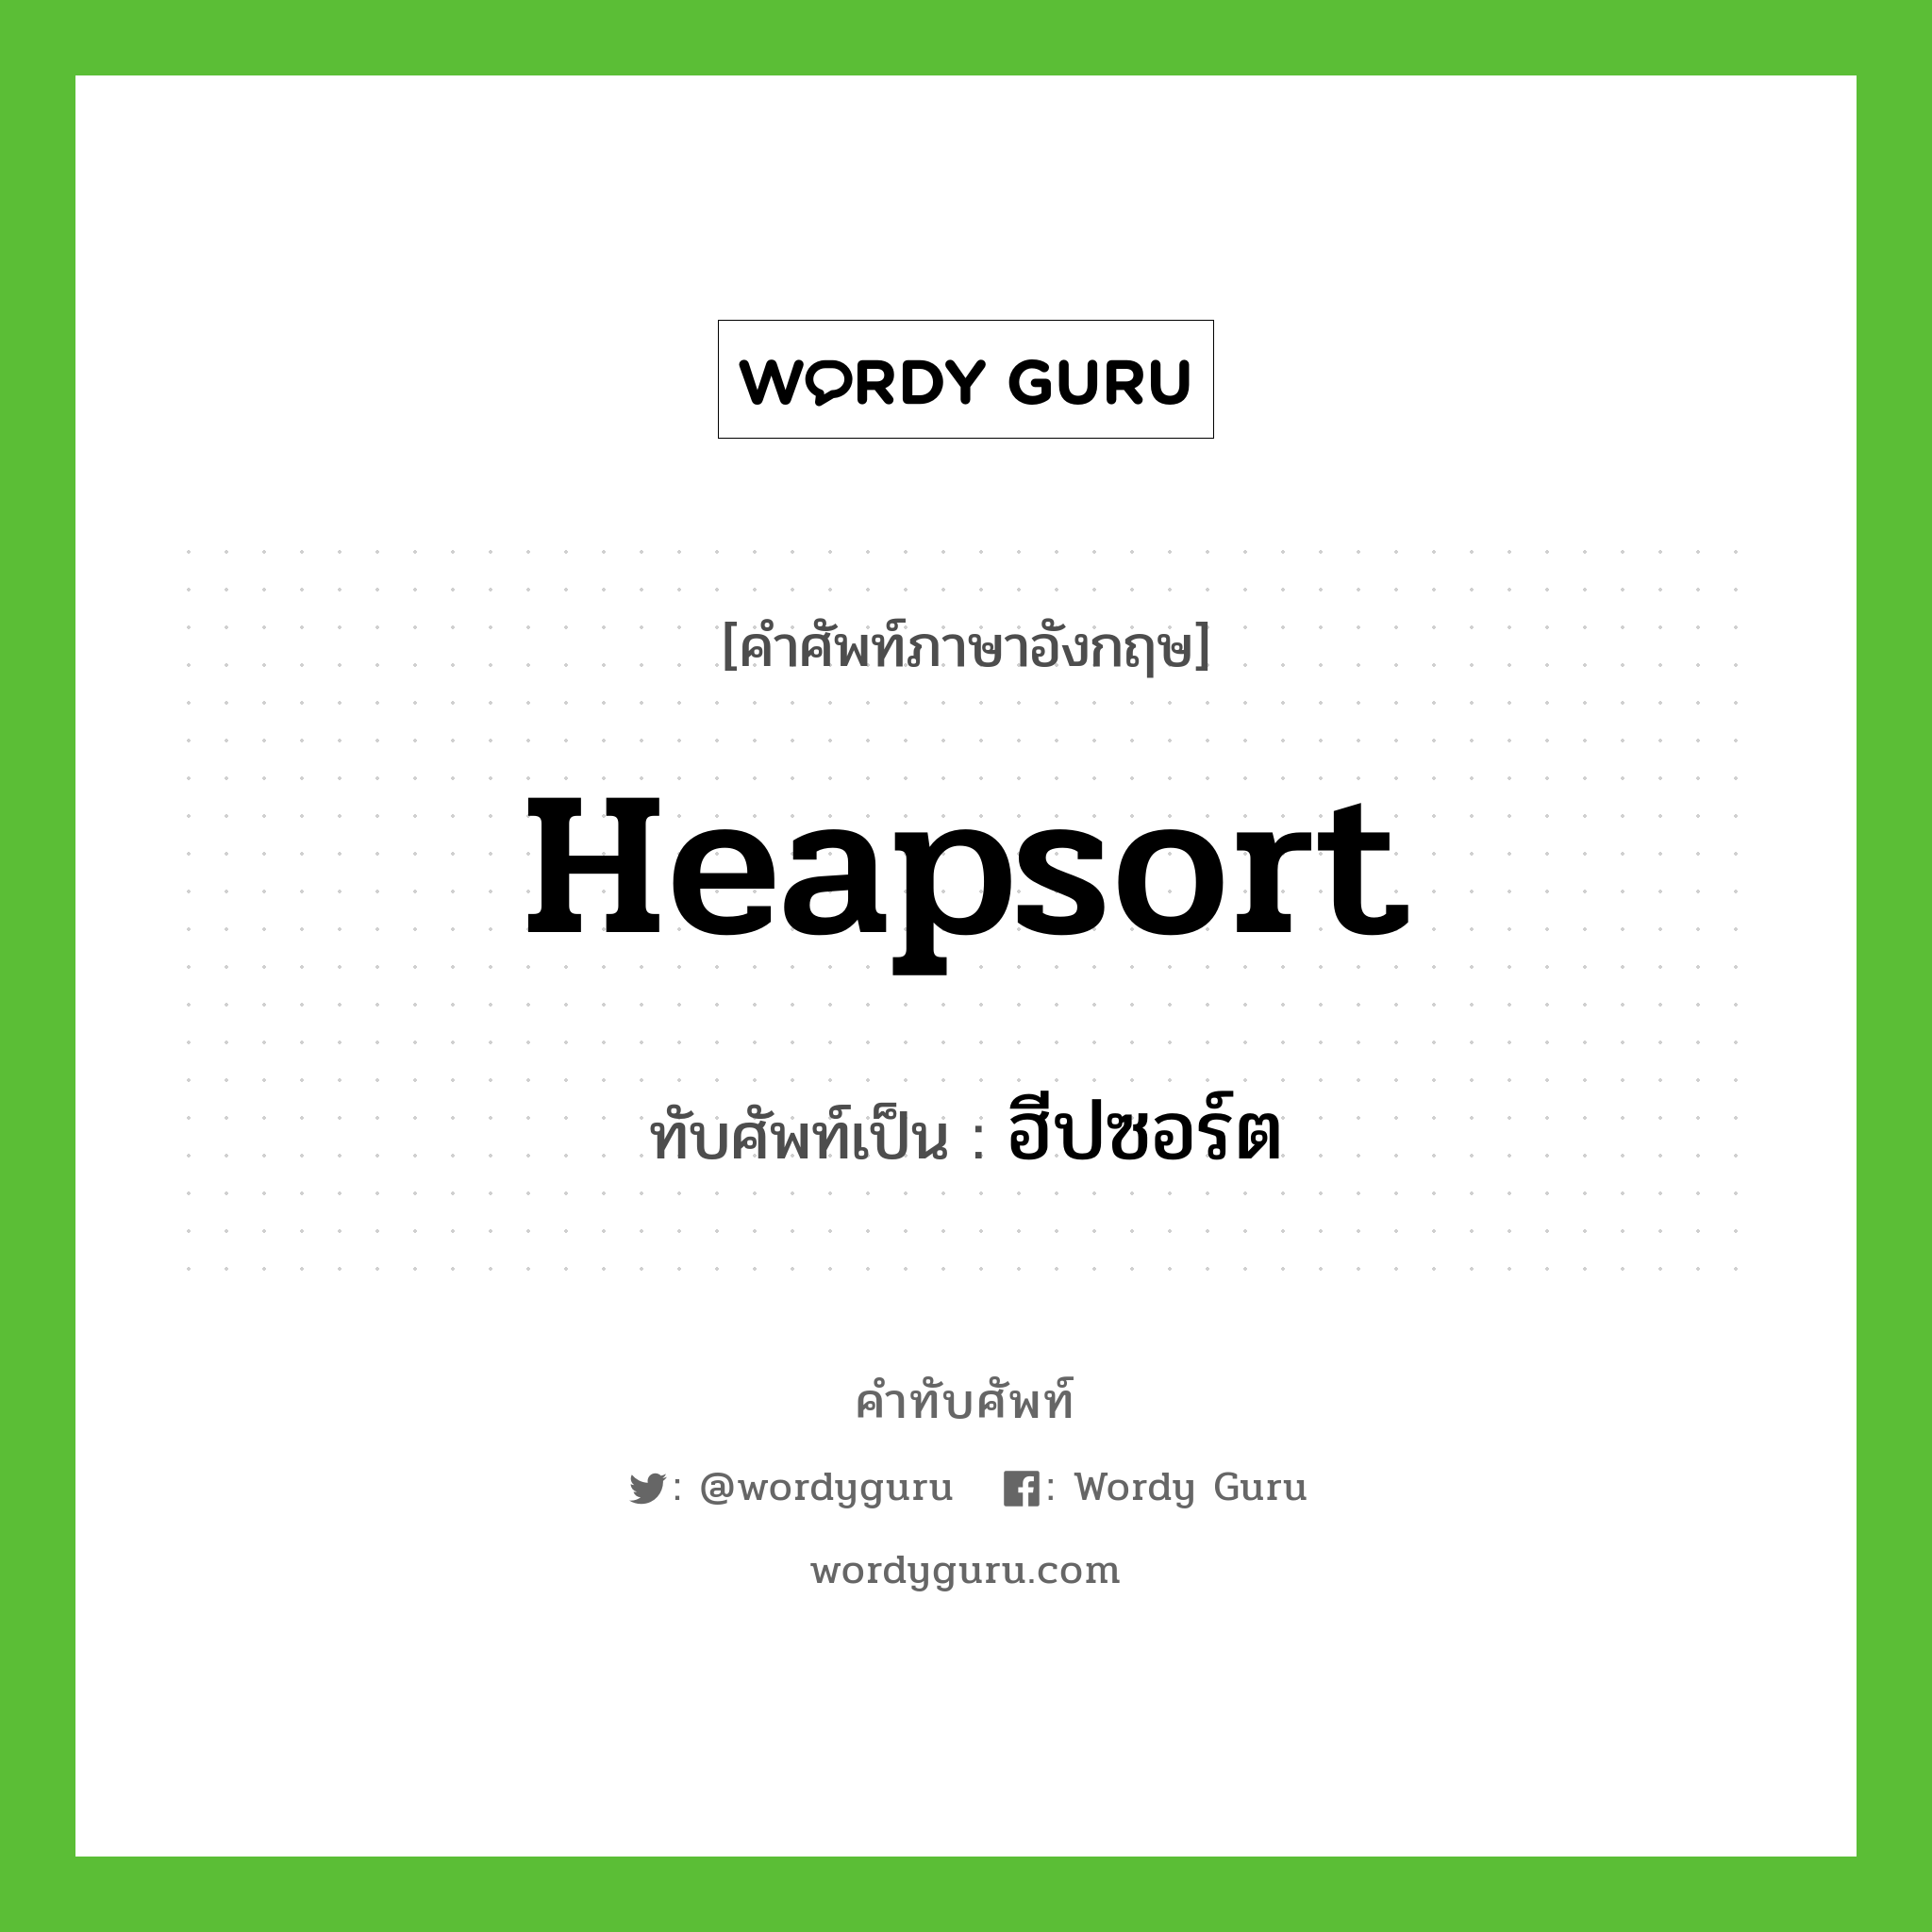 heapsort เขียนเป็นคำไทยว่าอะไร?, คำศัพท์ภาษาอังกฤษ heapsort ทับศัพท์เป็น ฮีปซอร์ต